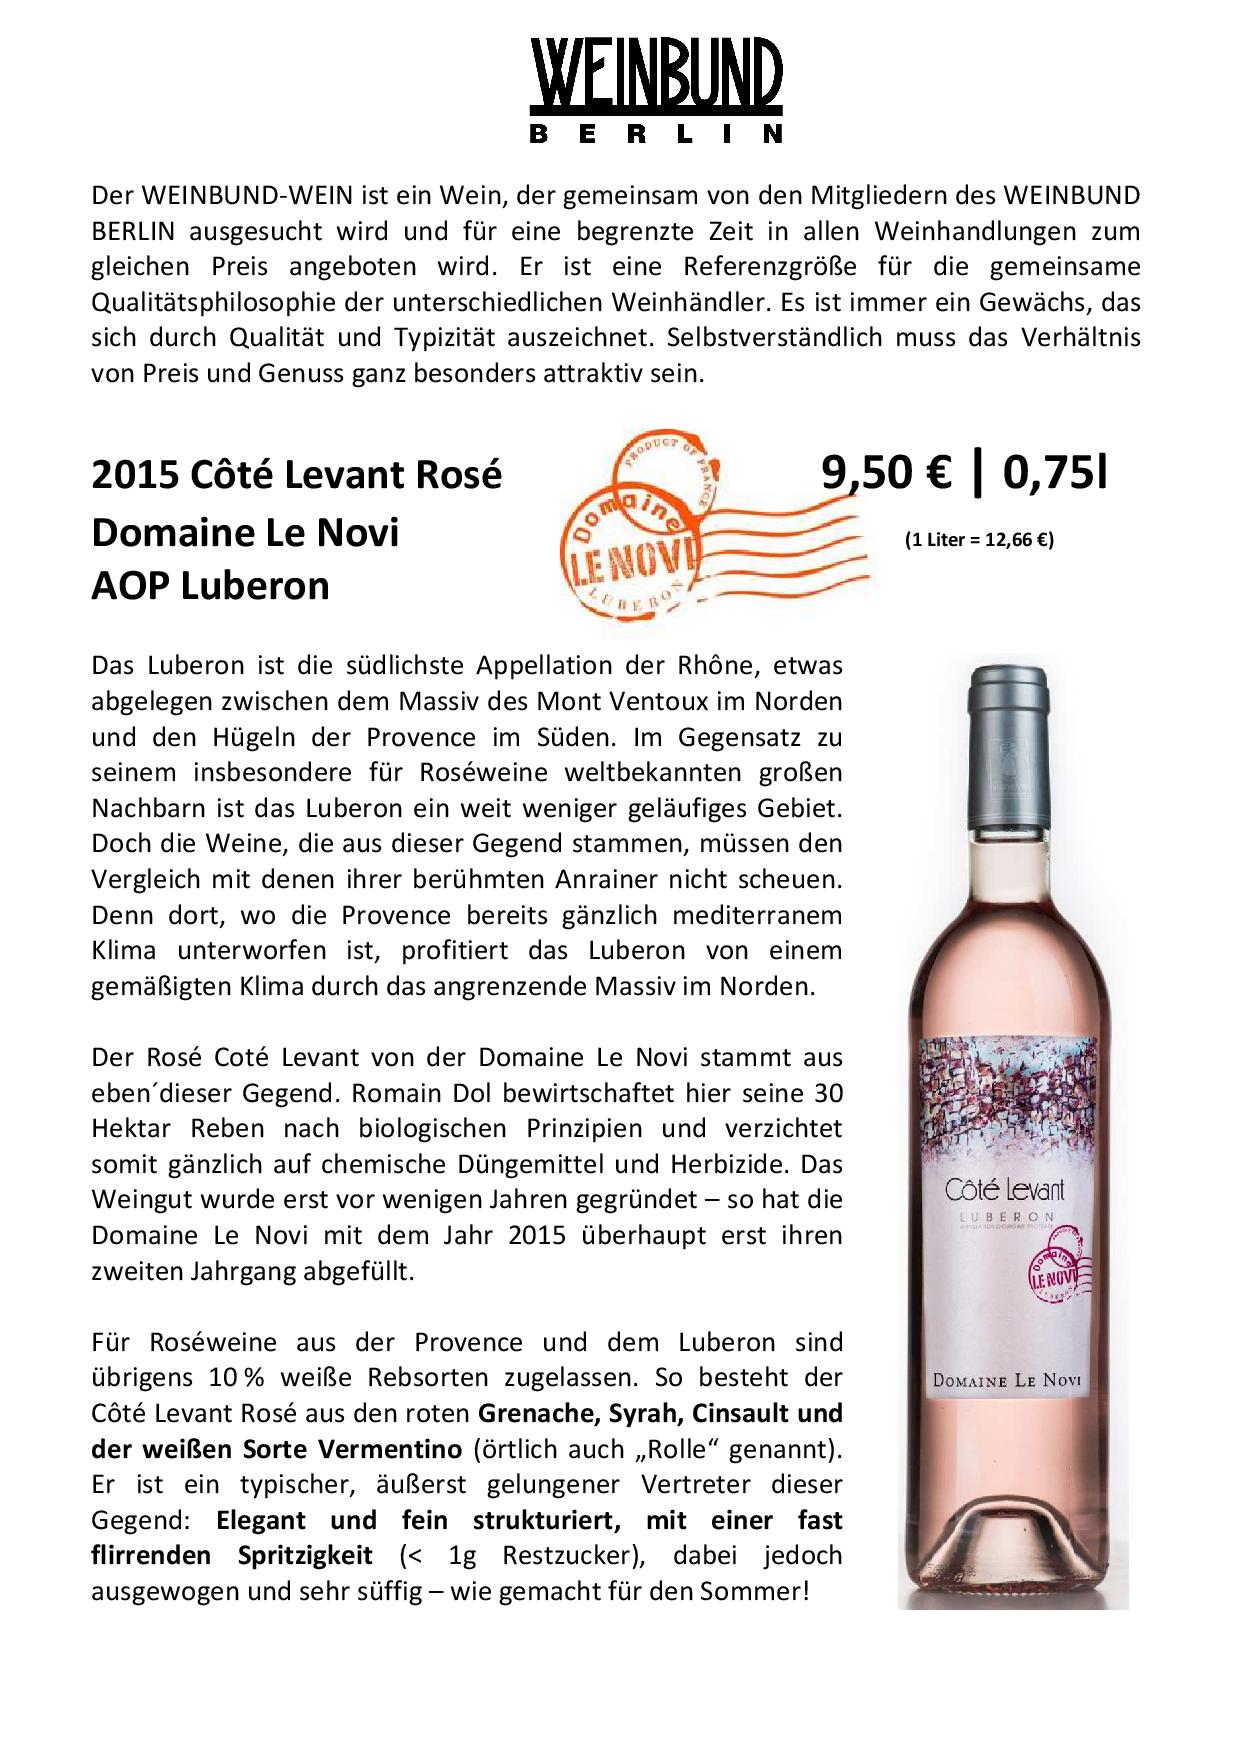 Weinbund Wein 2016_Cote Levant rosé (3)-page-001